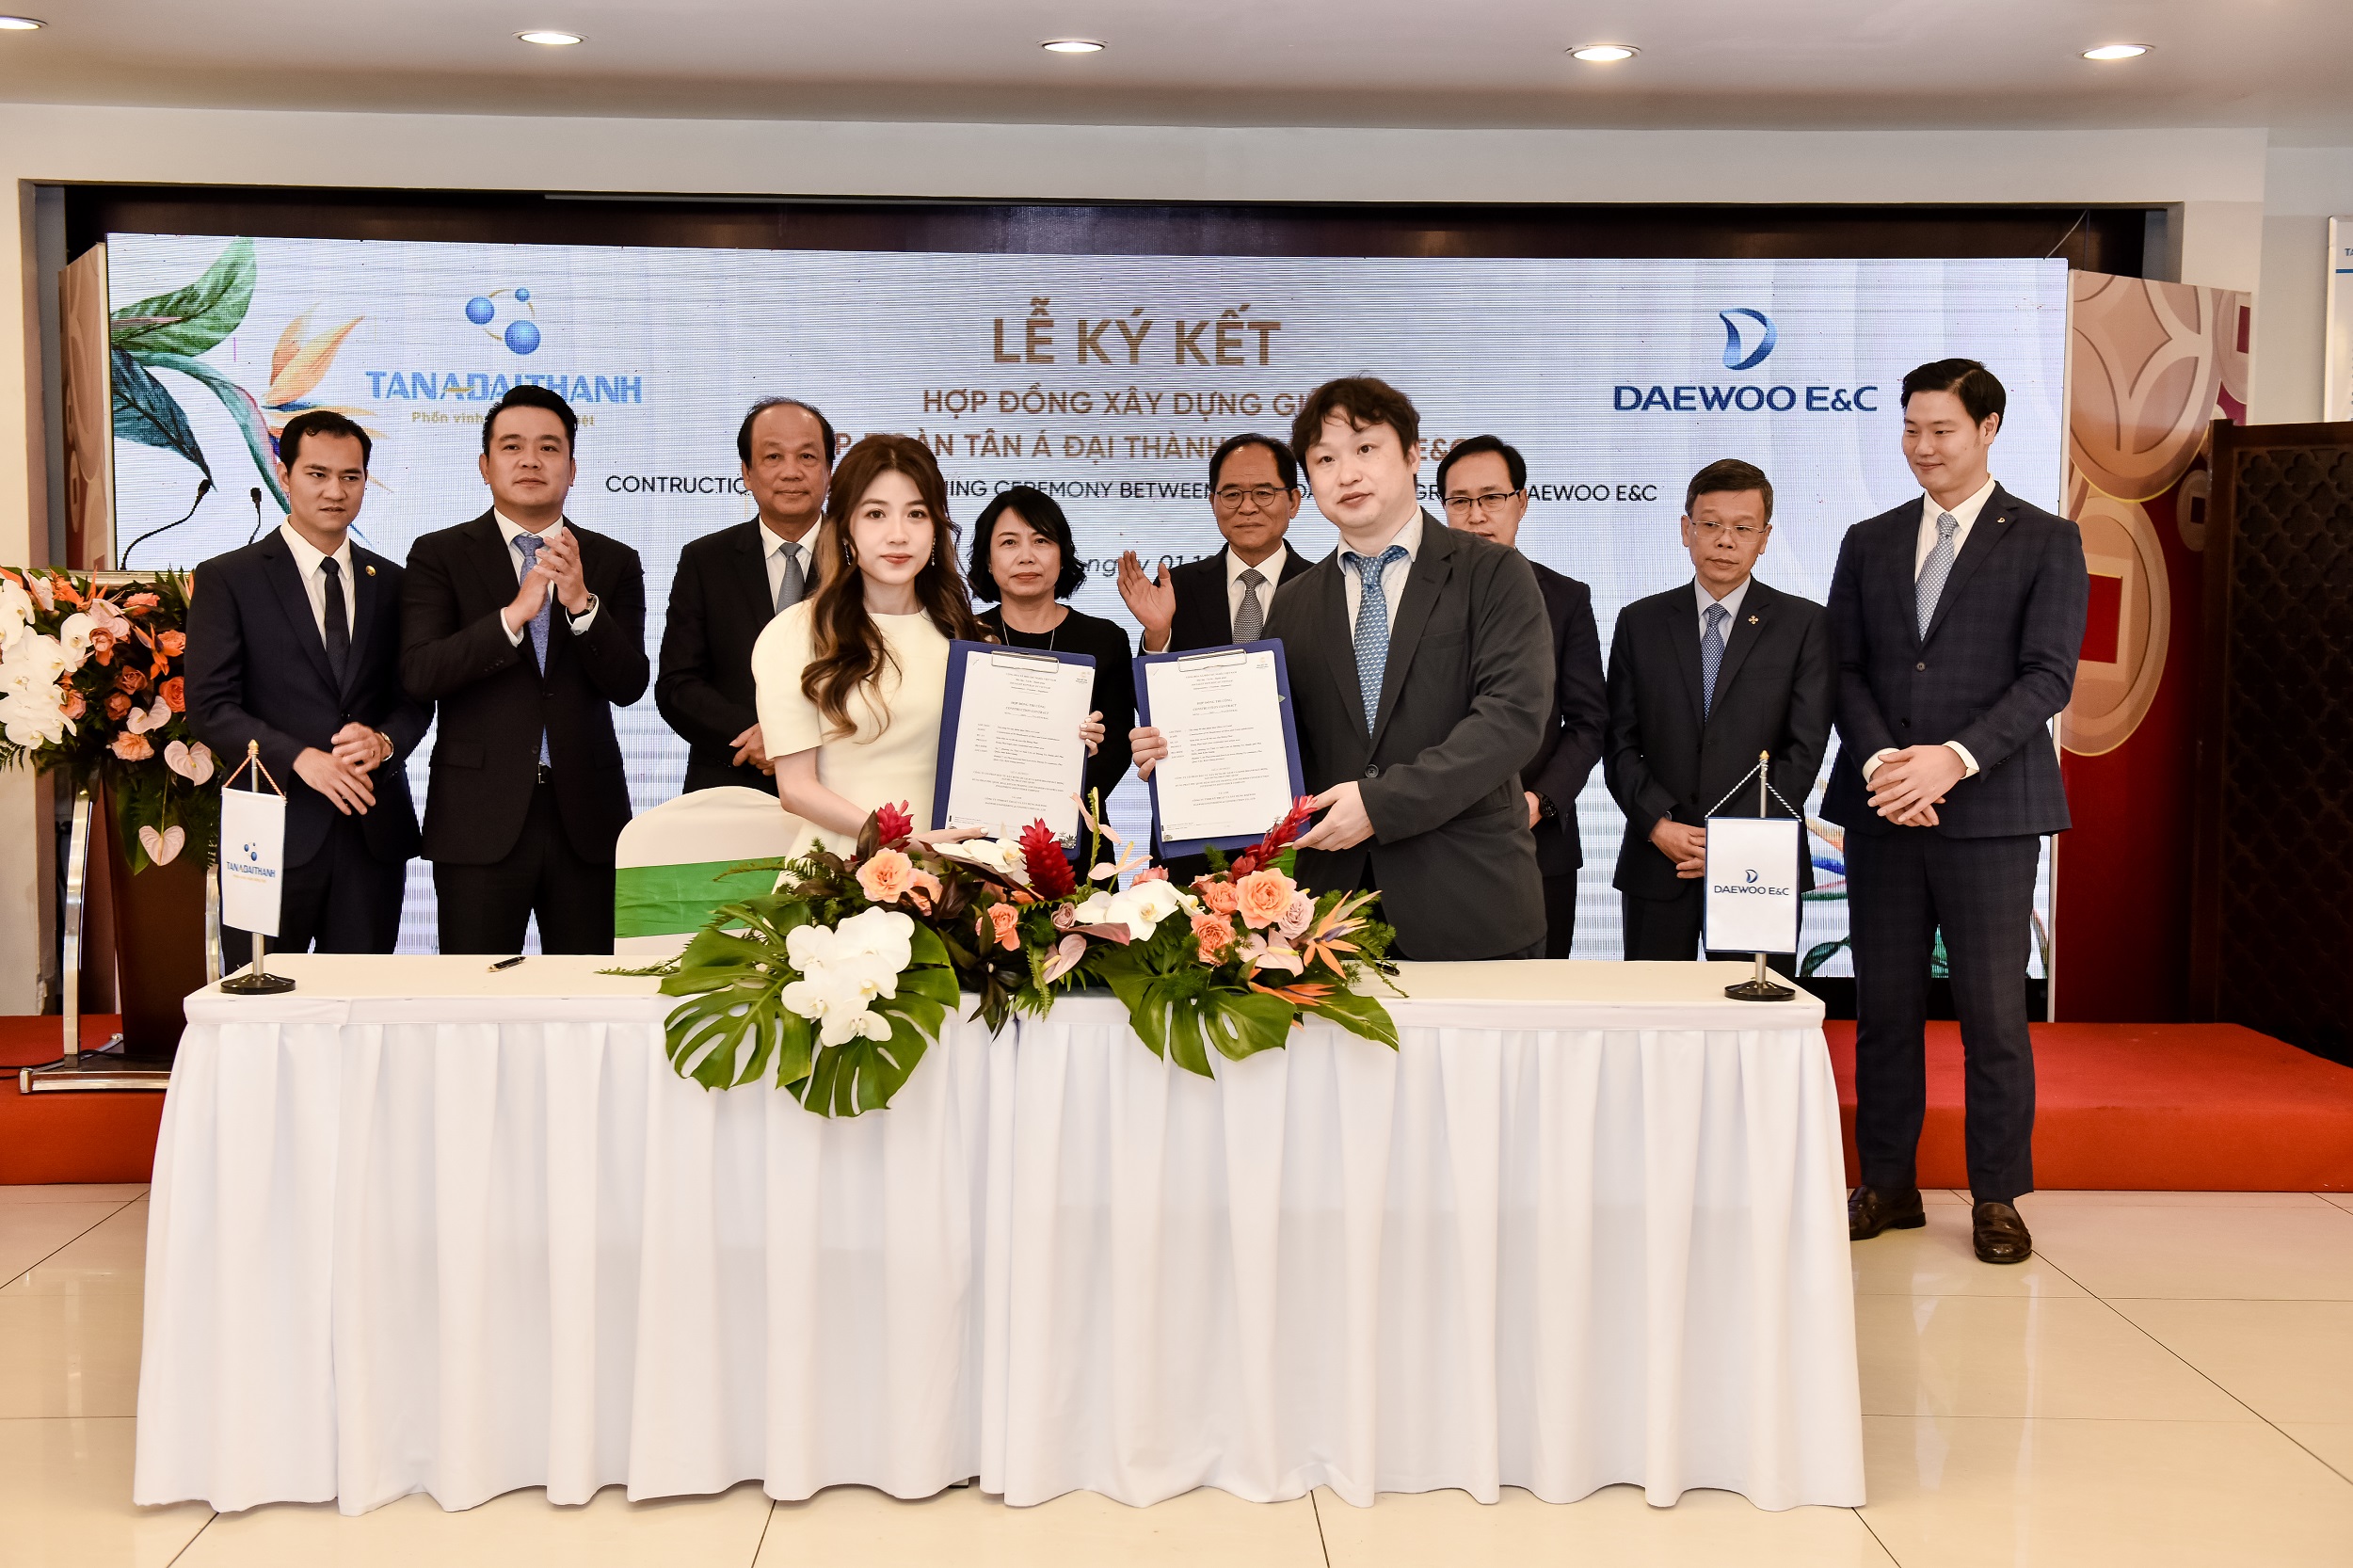 Tân Á Đại Thành hợp tác Daewoo E&C xây dựng phát triển Đại đô thị Meyhomes Capital Phú Quốc